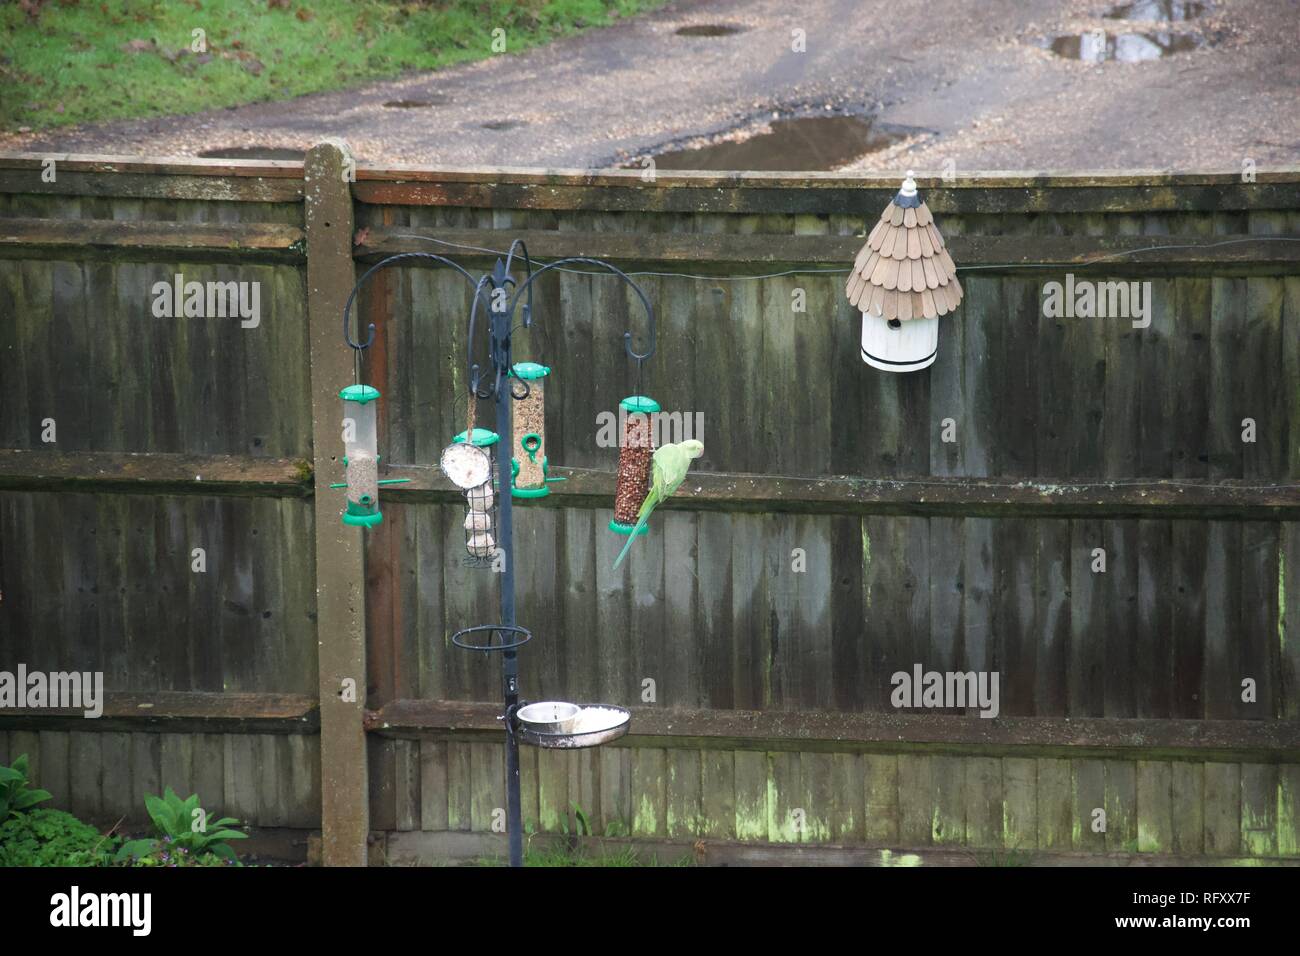 Ein grüner Wellensittich/Papageien füttern auf Erdnüsse in einem Englischen Garten, auf einem inländischen Garten Futterhaus, vor einem Zaun durch ein feuchtes Land Lane Stockfoto